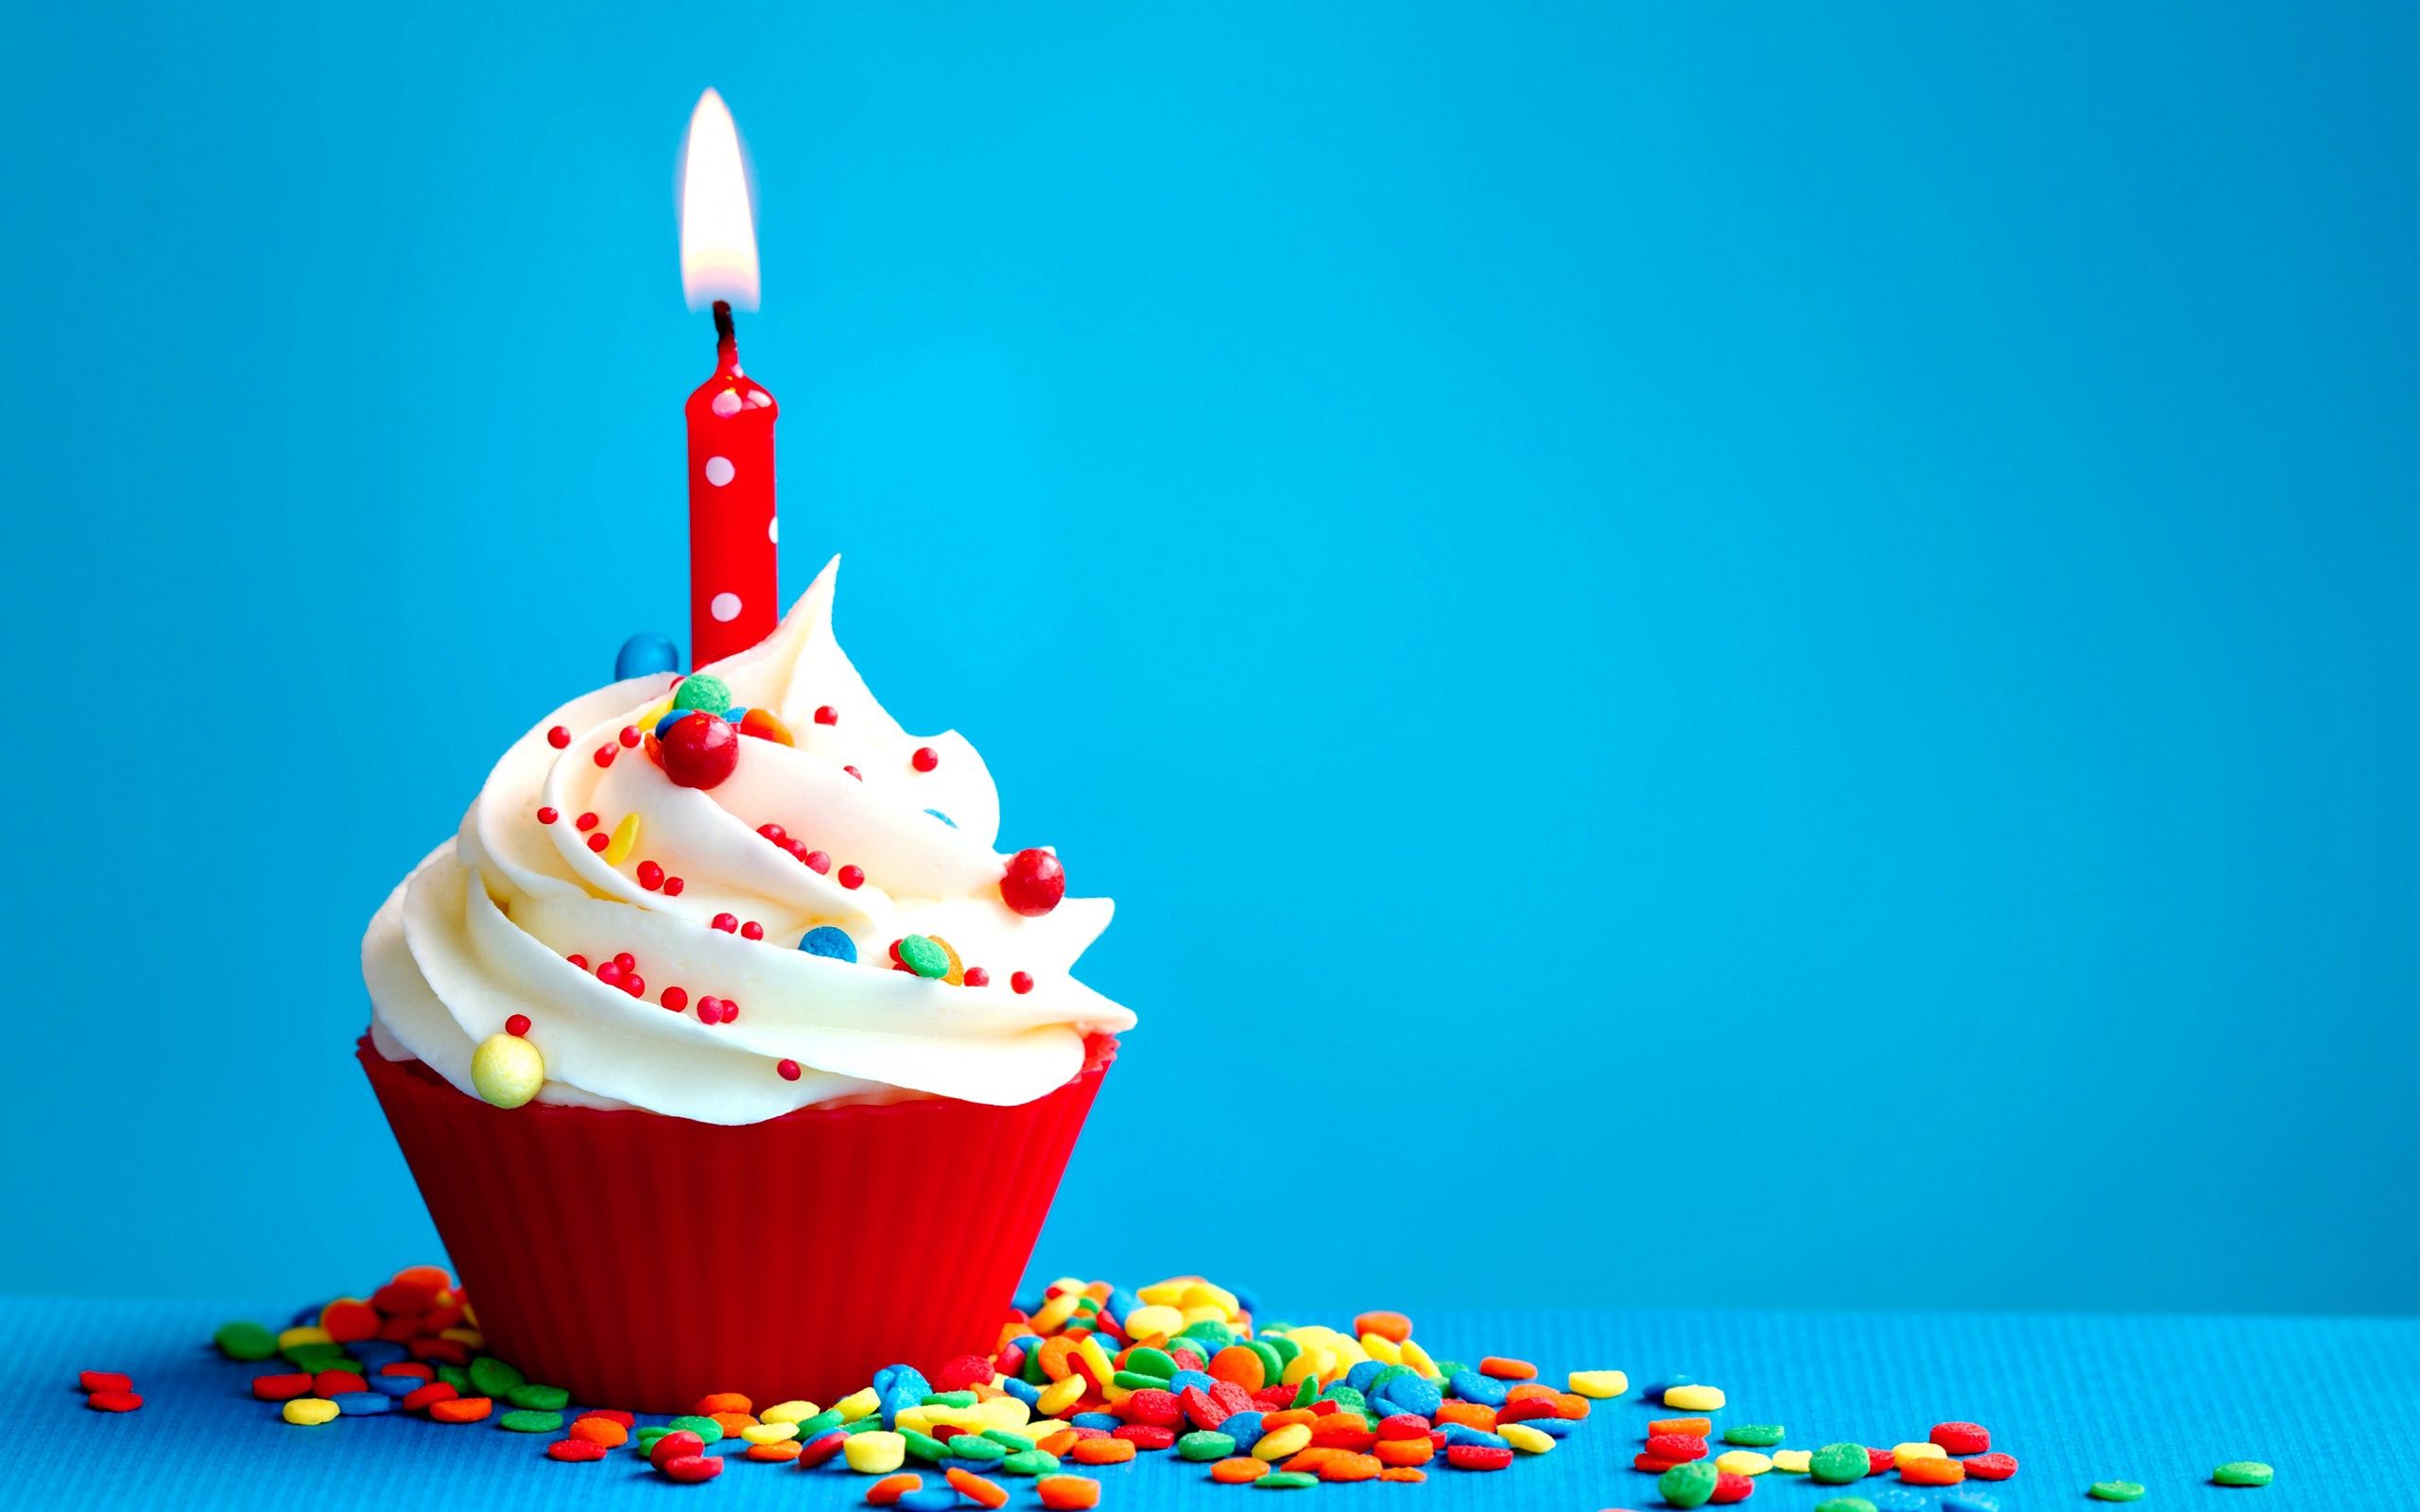 Colorido fondo de fiesta de cumpleaños vector de stock libre de regalías  631027331  Shutterstock